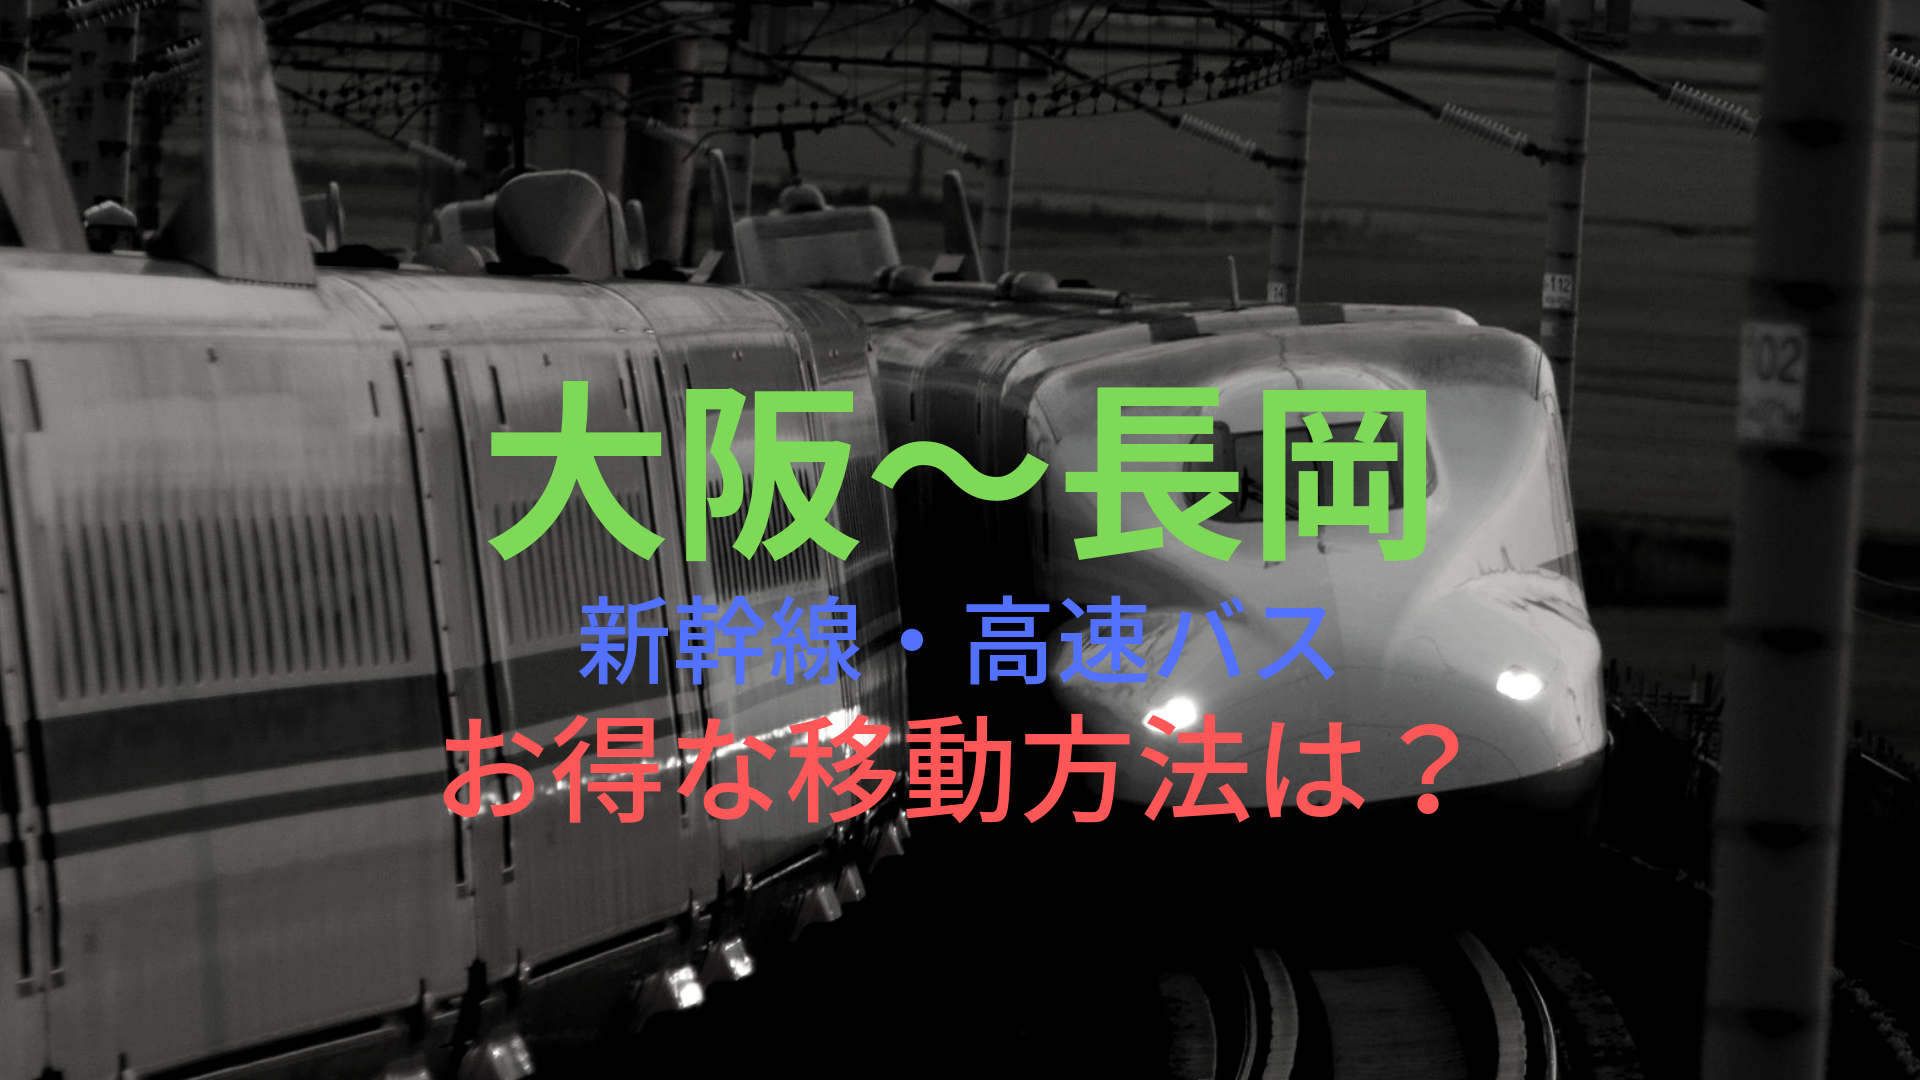 大阪 長岡 40円 格安で移動する方法は 新幹線 高速バスをそれぞれ比較 ばしたく交通